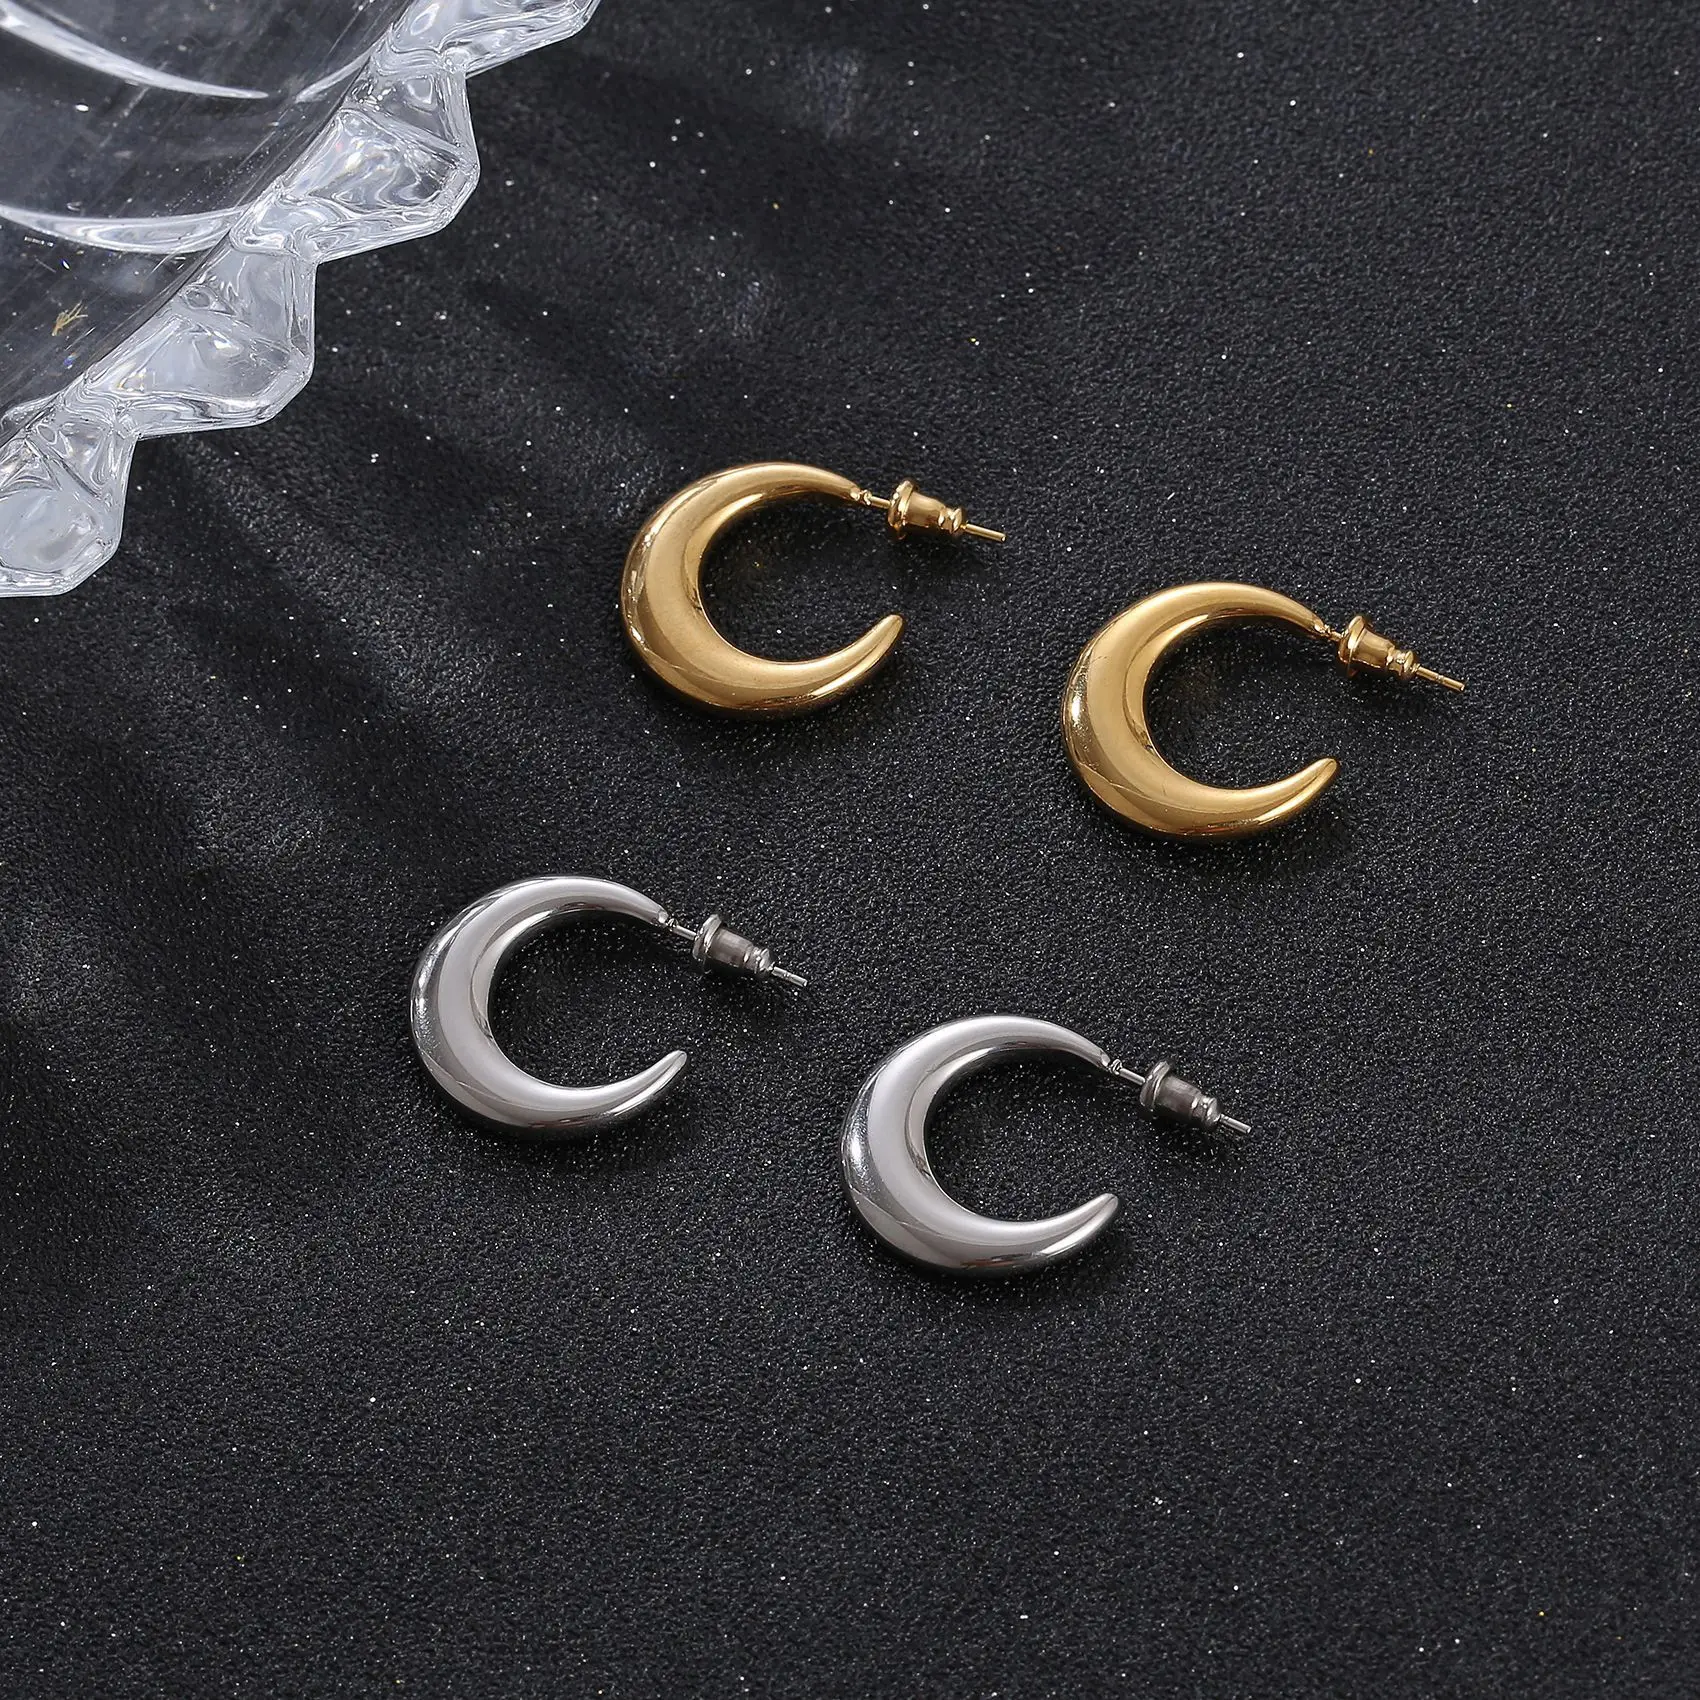 Moon Earrings Stainless Steel High Polished Moon Shape Stud Earrings 18k Gold Plated Hollow Hoop Women Earrings